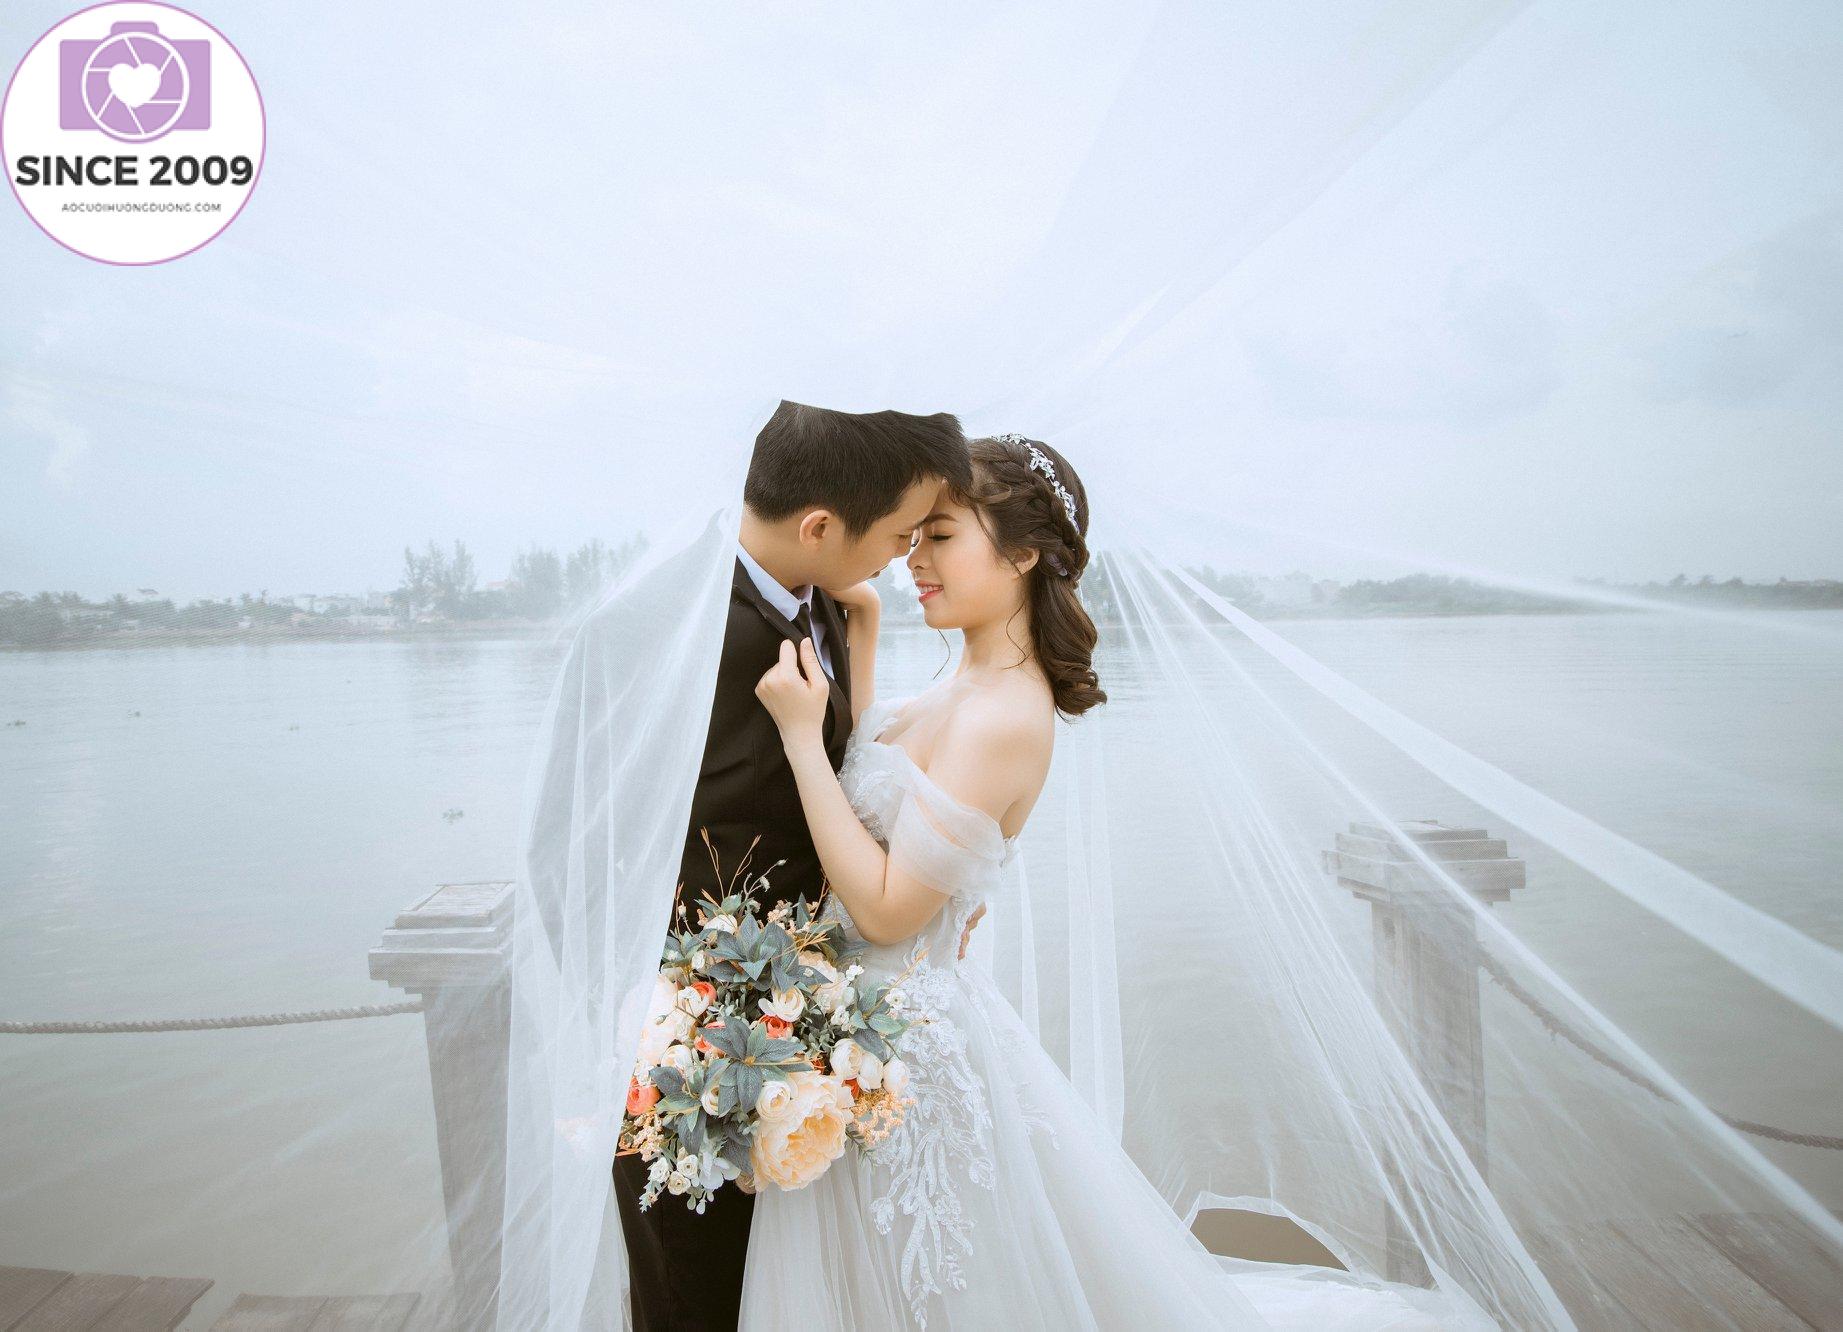 Chụp ảnh cưới: Hải Dương - một địa điểm đẹp và lãng mạn với những cánh đồng lúa và hoa vàng rực rỡ sẽ là lựa chọn hoàn hảo cho bộ ảnh cưới của bạn. Với những bức hình đẹp và đầy ý nghĩa, chụp ảnh cưới ở Hải Dương sẽ là một kỉ niệm đáng nhớ về tình yêu của bạn trên đất Việt Nam.